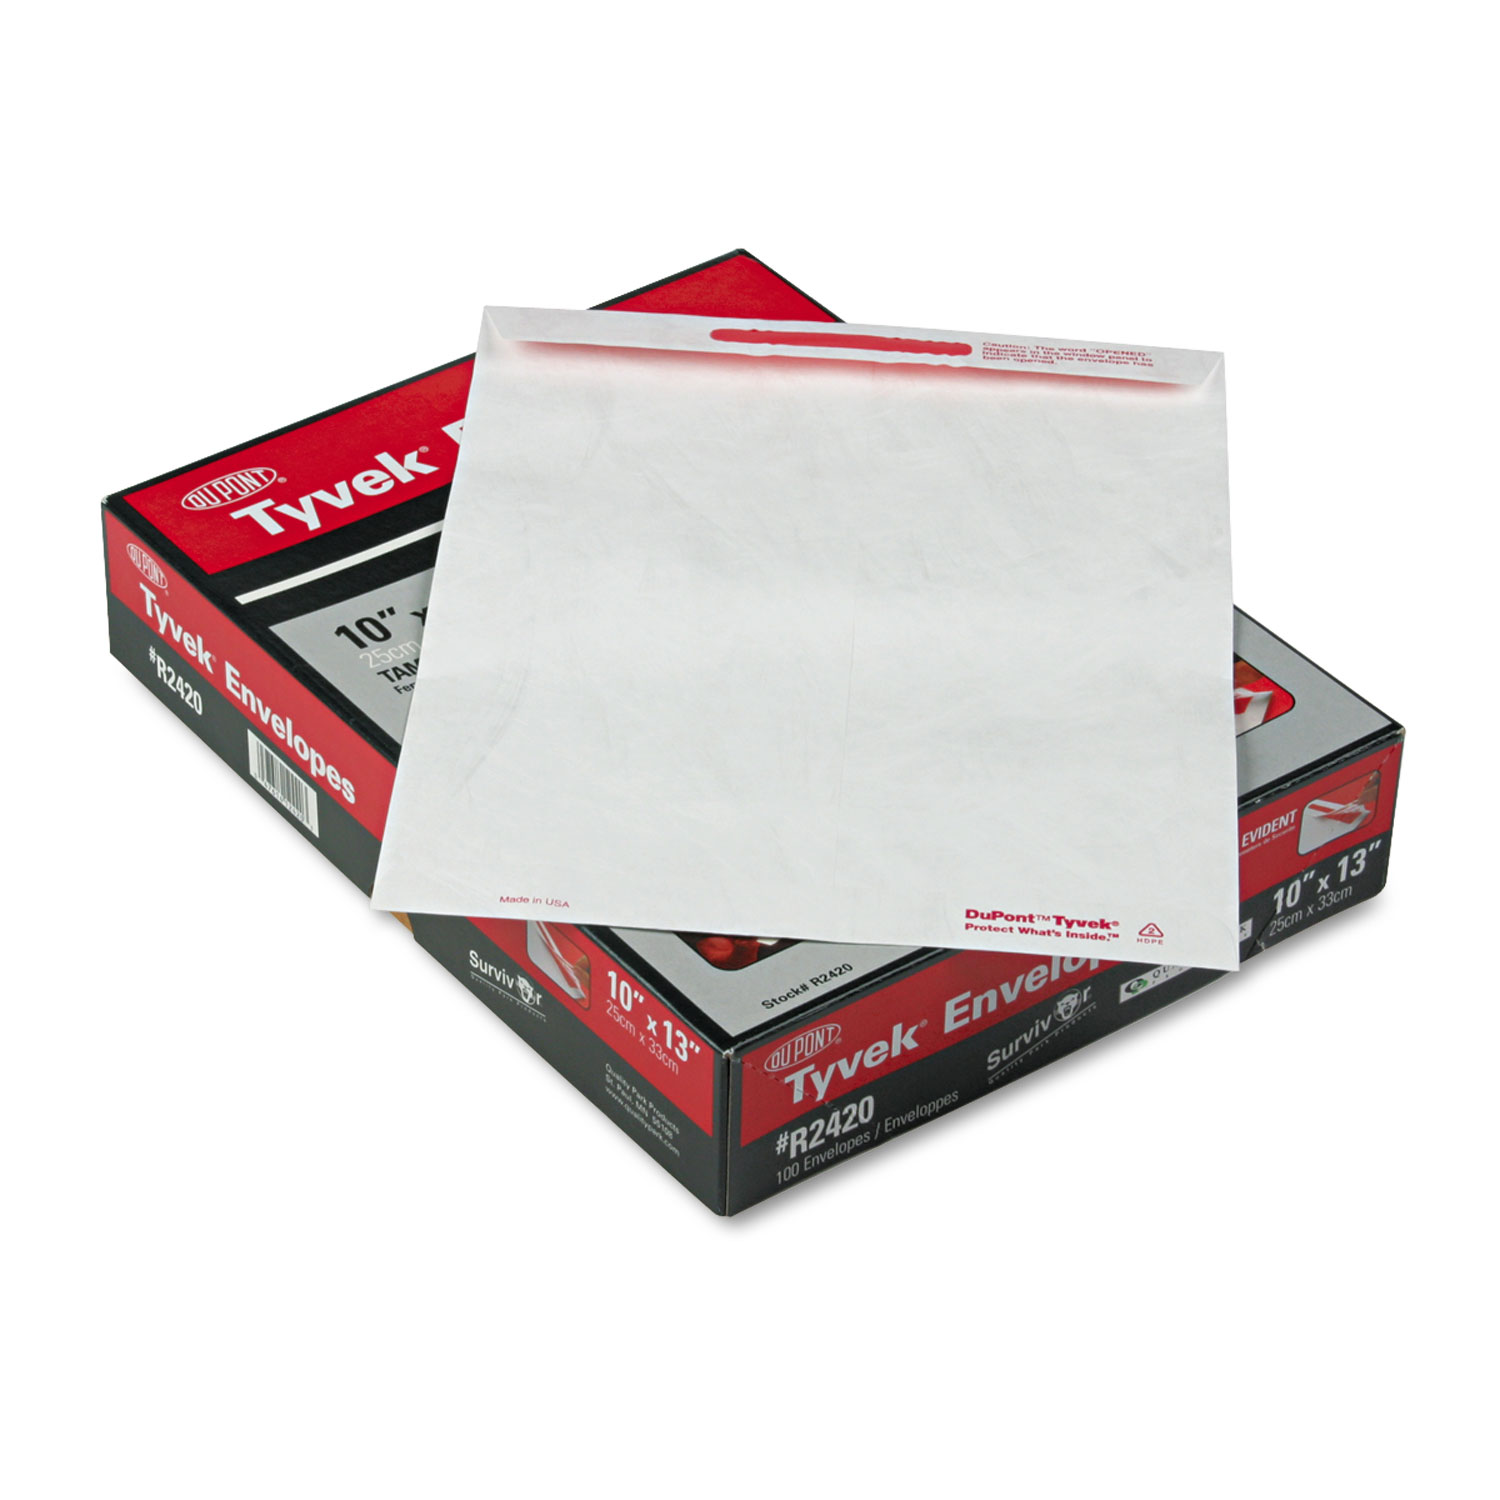 Advantage Flap Stik Tyvek Mailer, 10 x 13, White, 100/Box